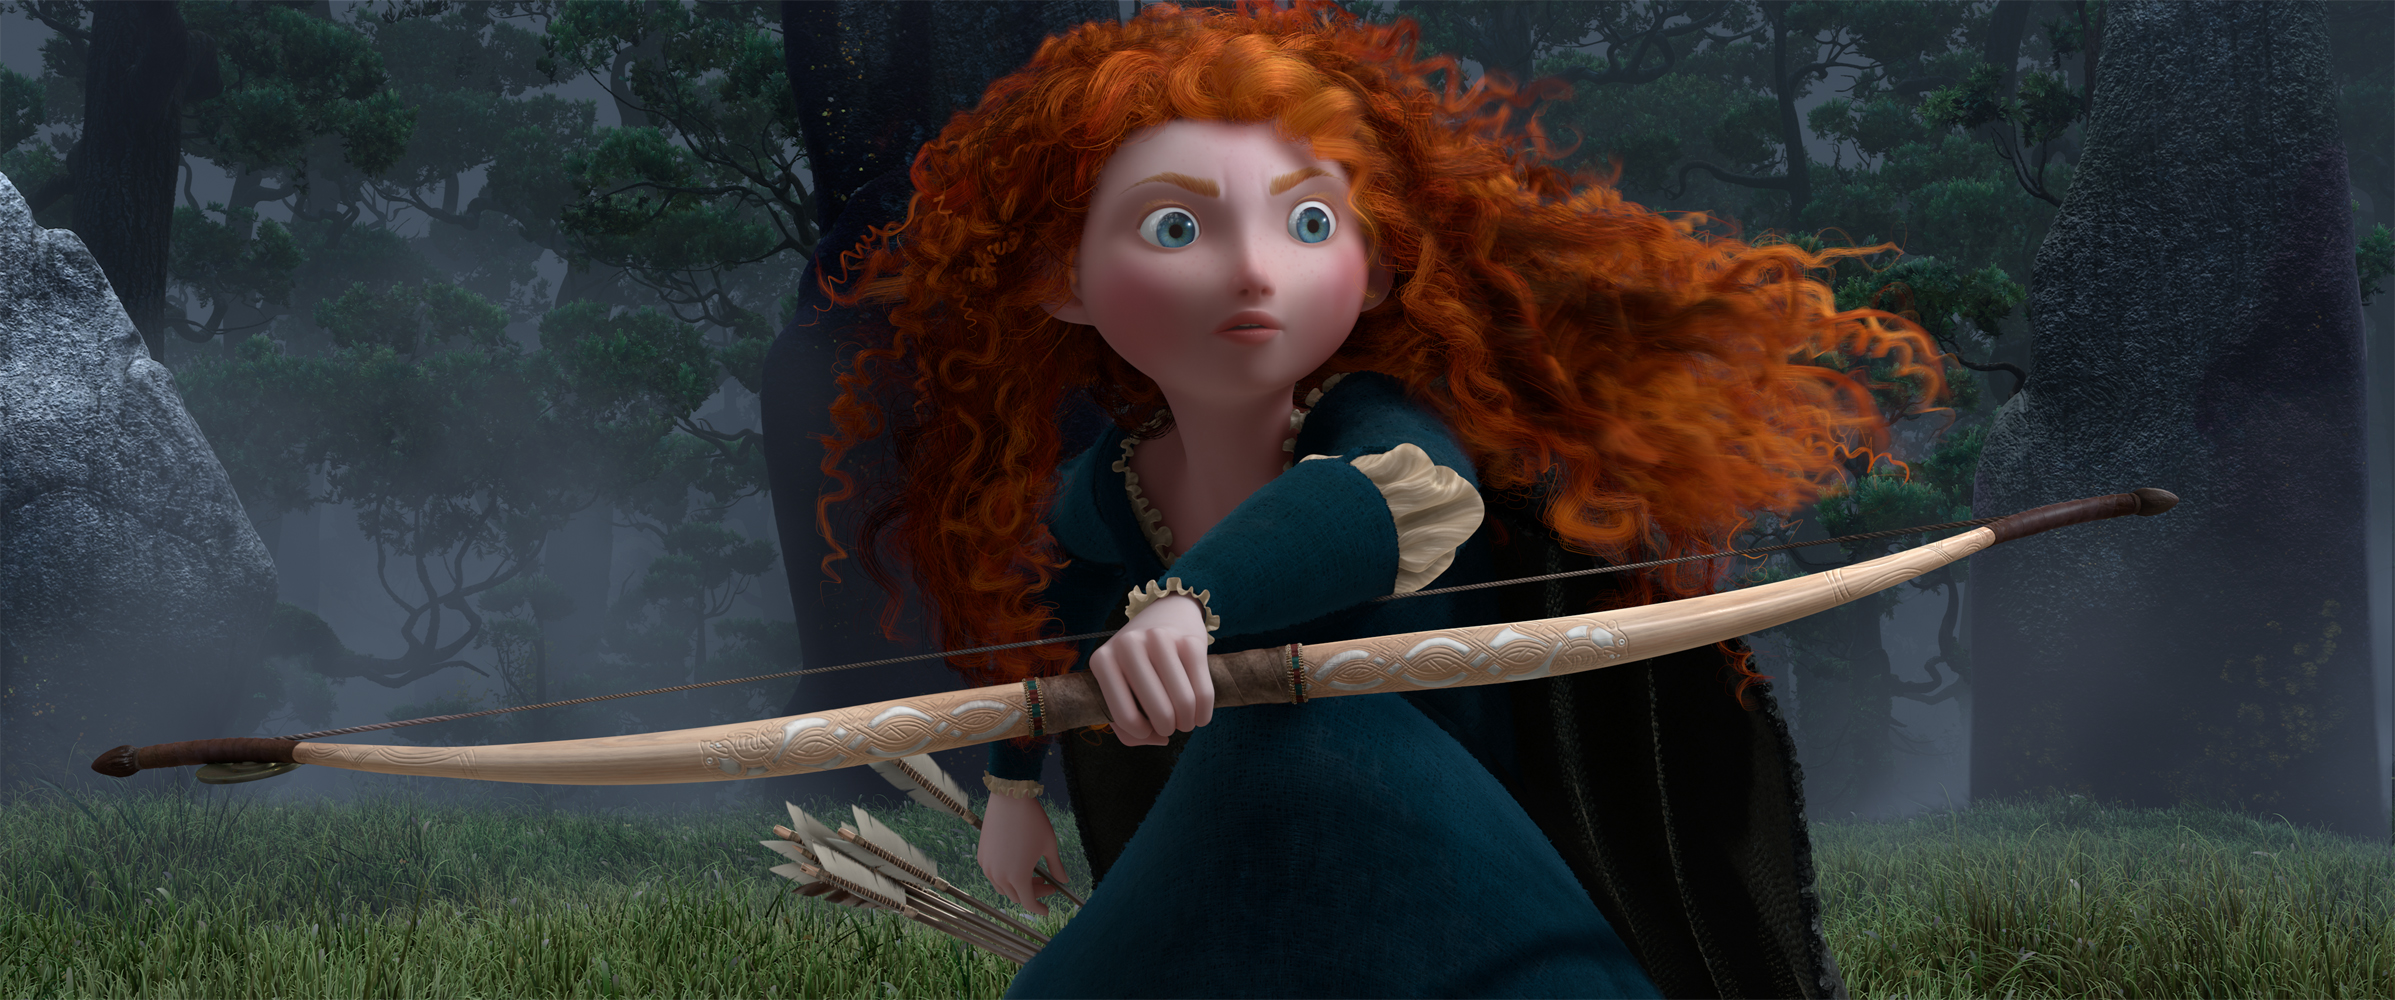 Disney Pixar S Brave Official Teaser Trailer And Wallpaper